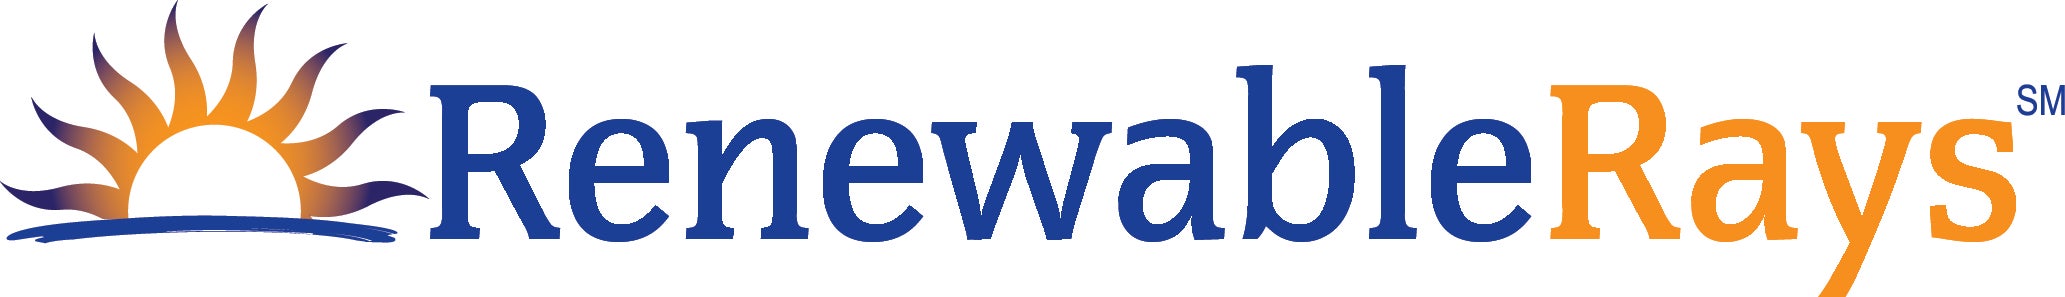 renewable rays logo